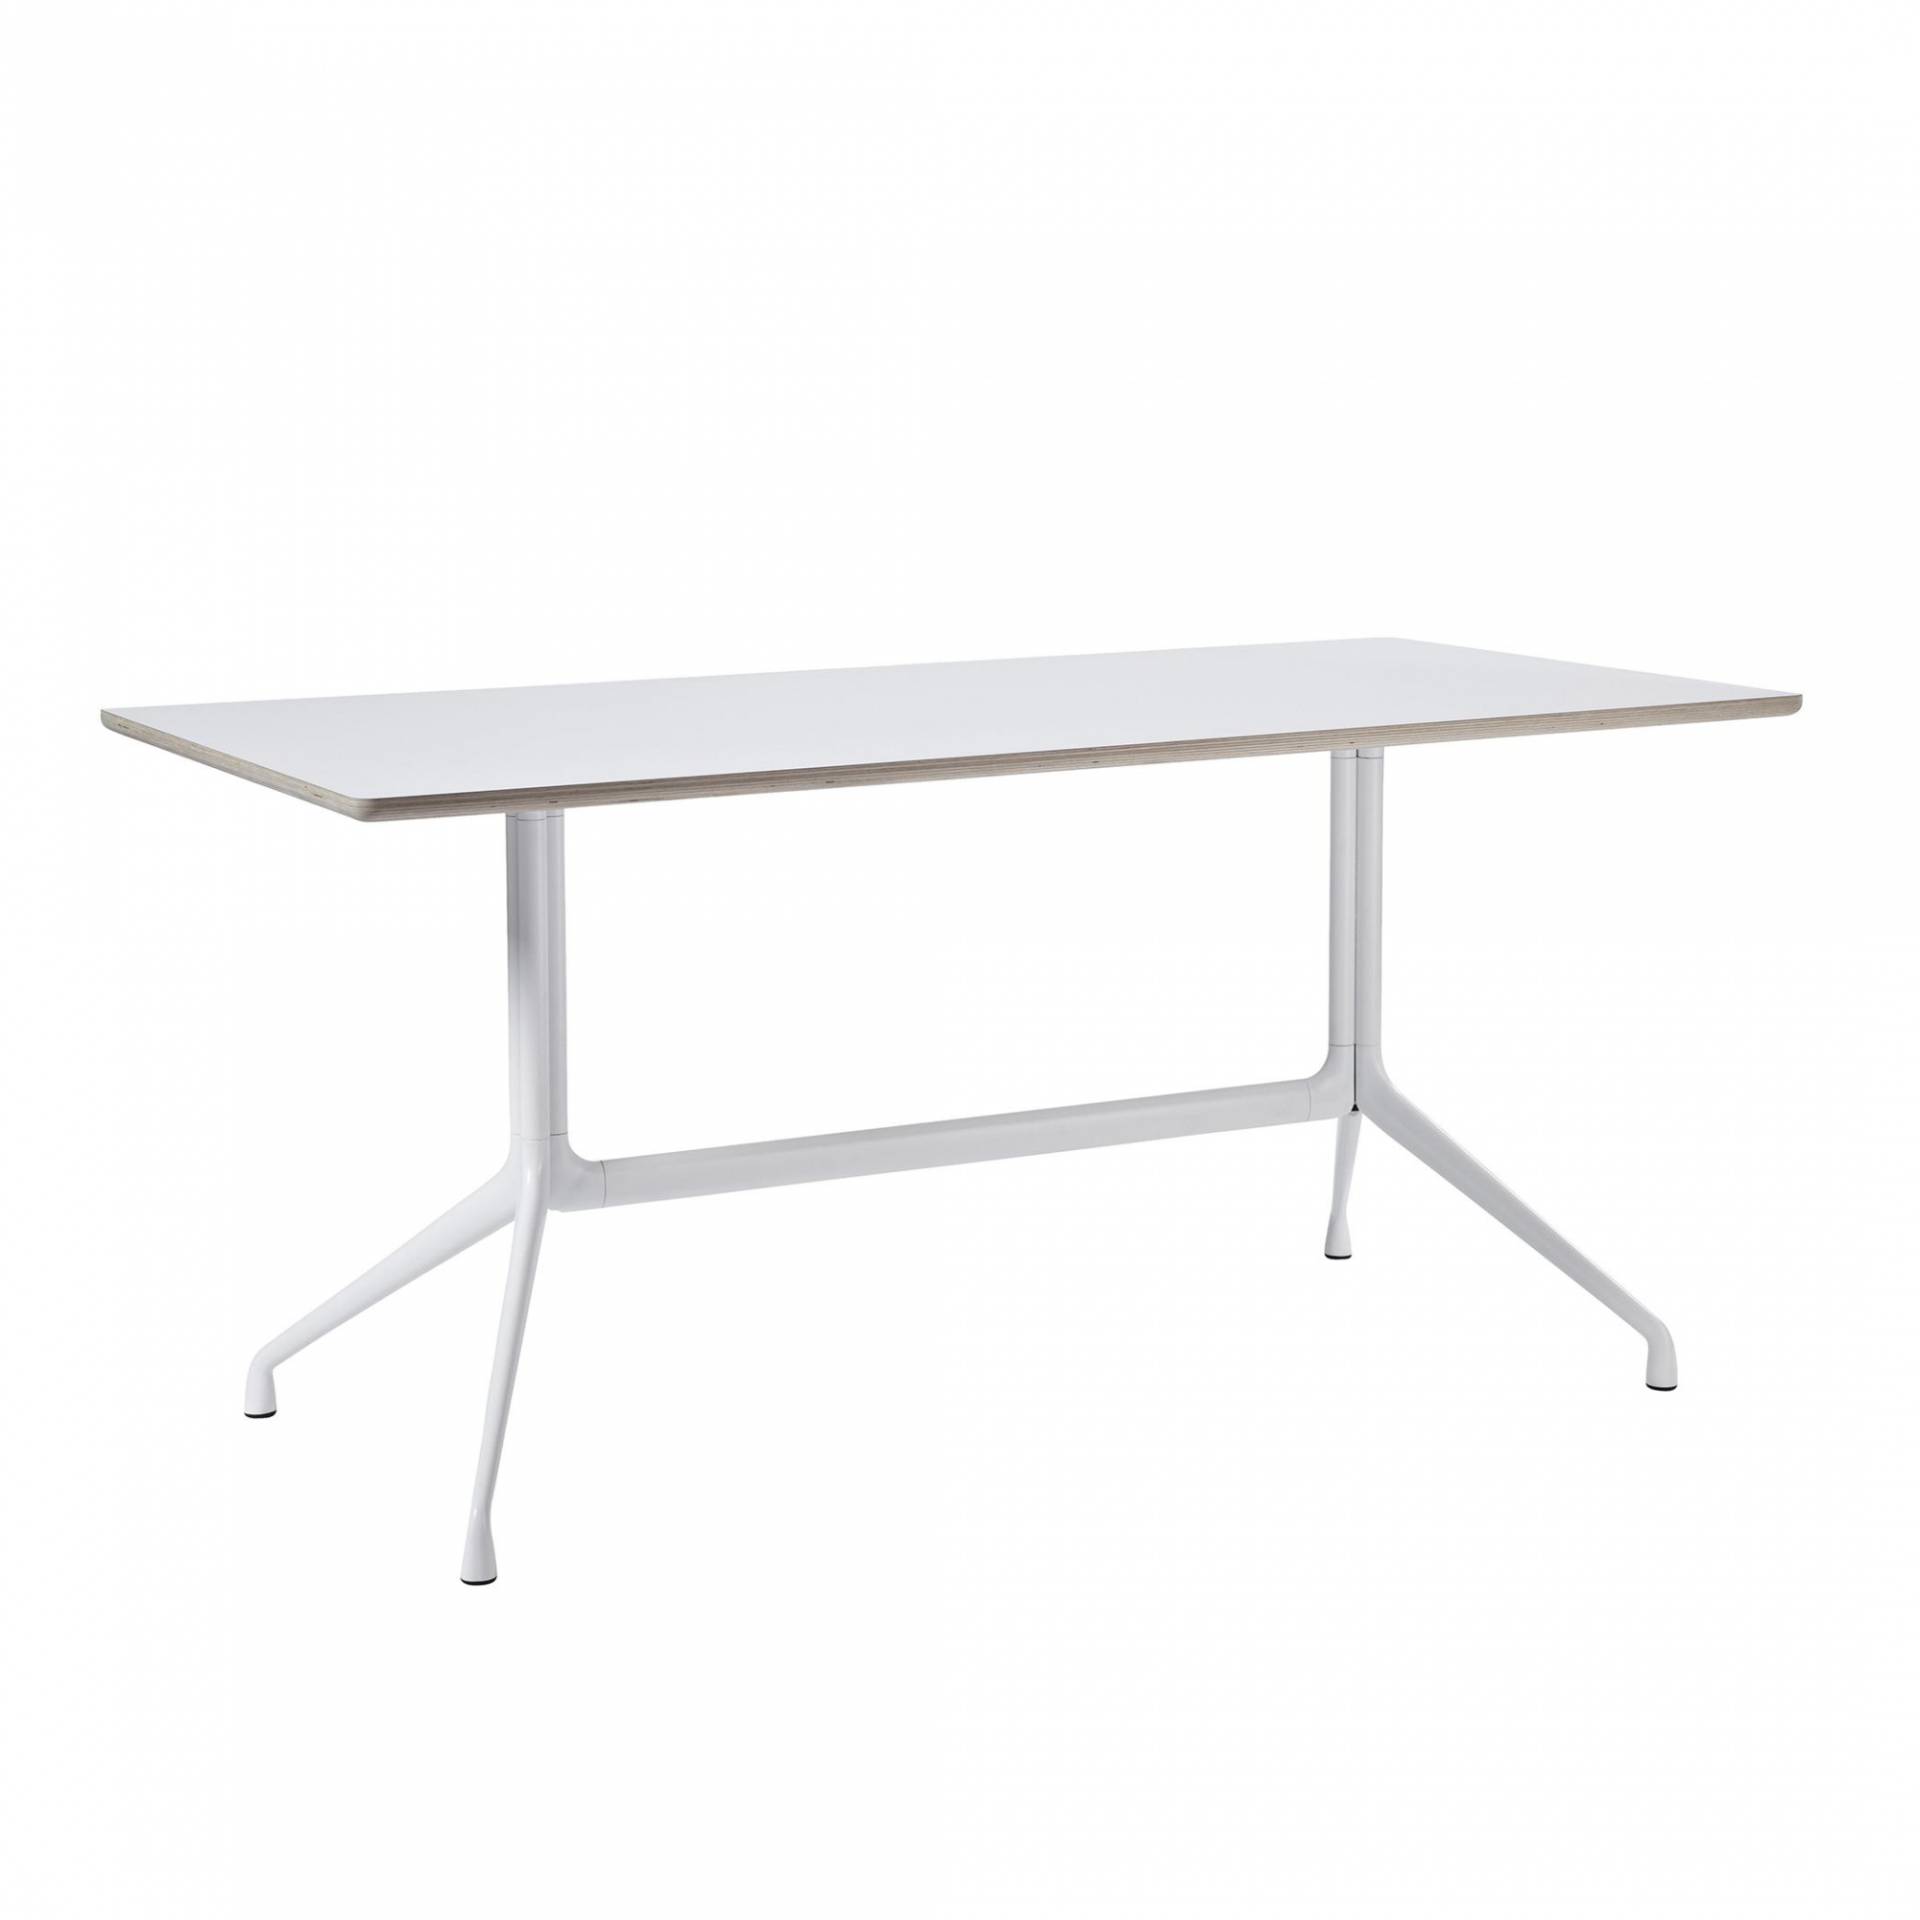 HAY - AAT 10 Esstisch Tischplatte Laminat 180x90cm - weiß/Tischplatte Laminat/Sperrholzkante/LxBxH 180x90x73cm von HAY